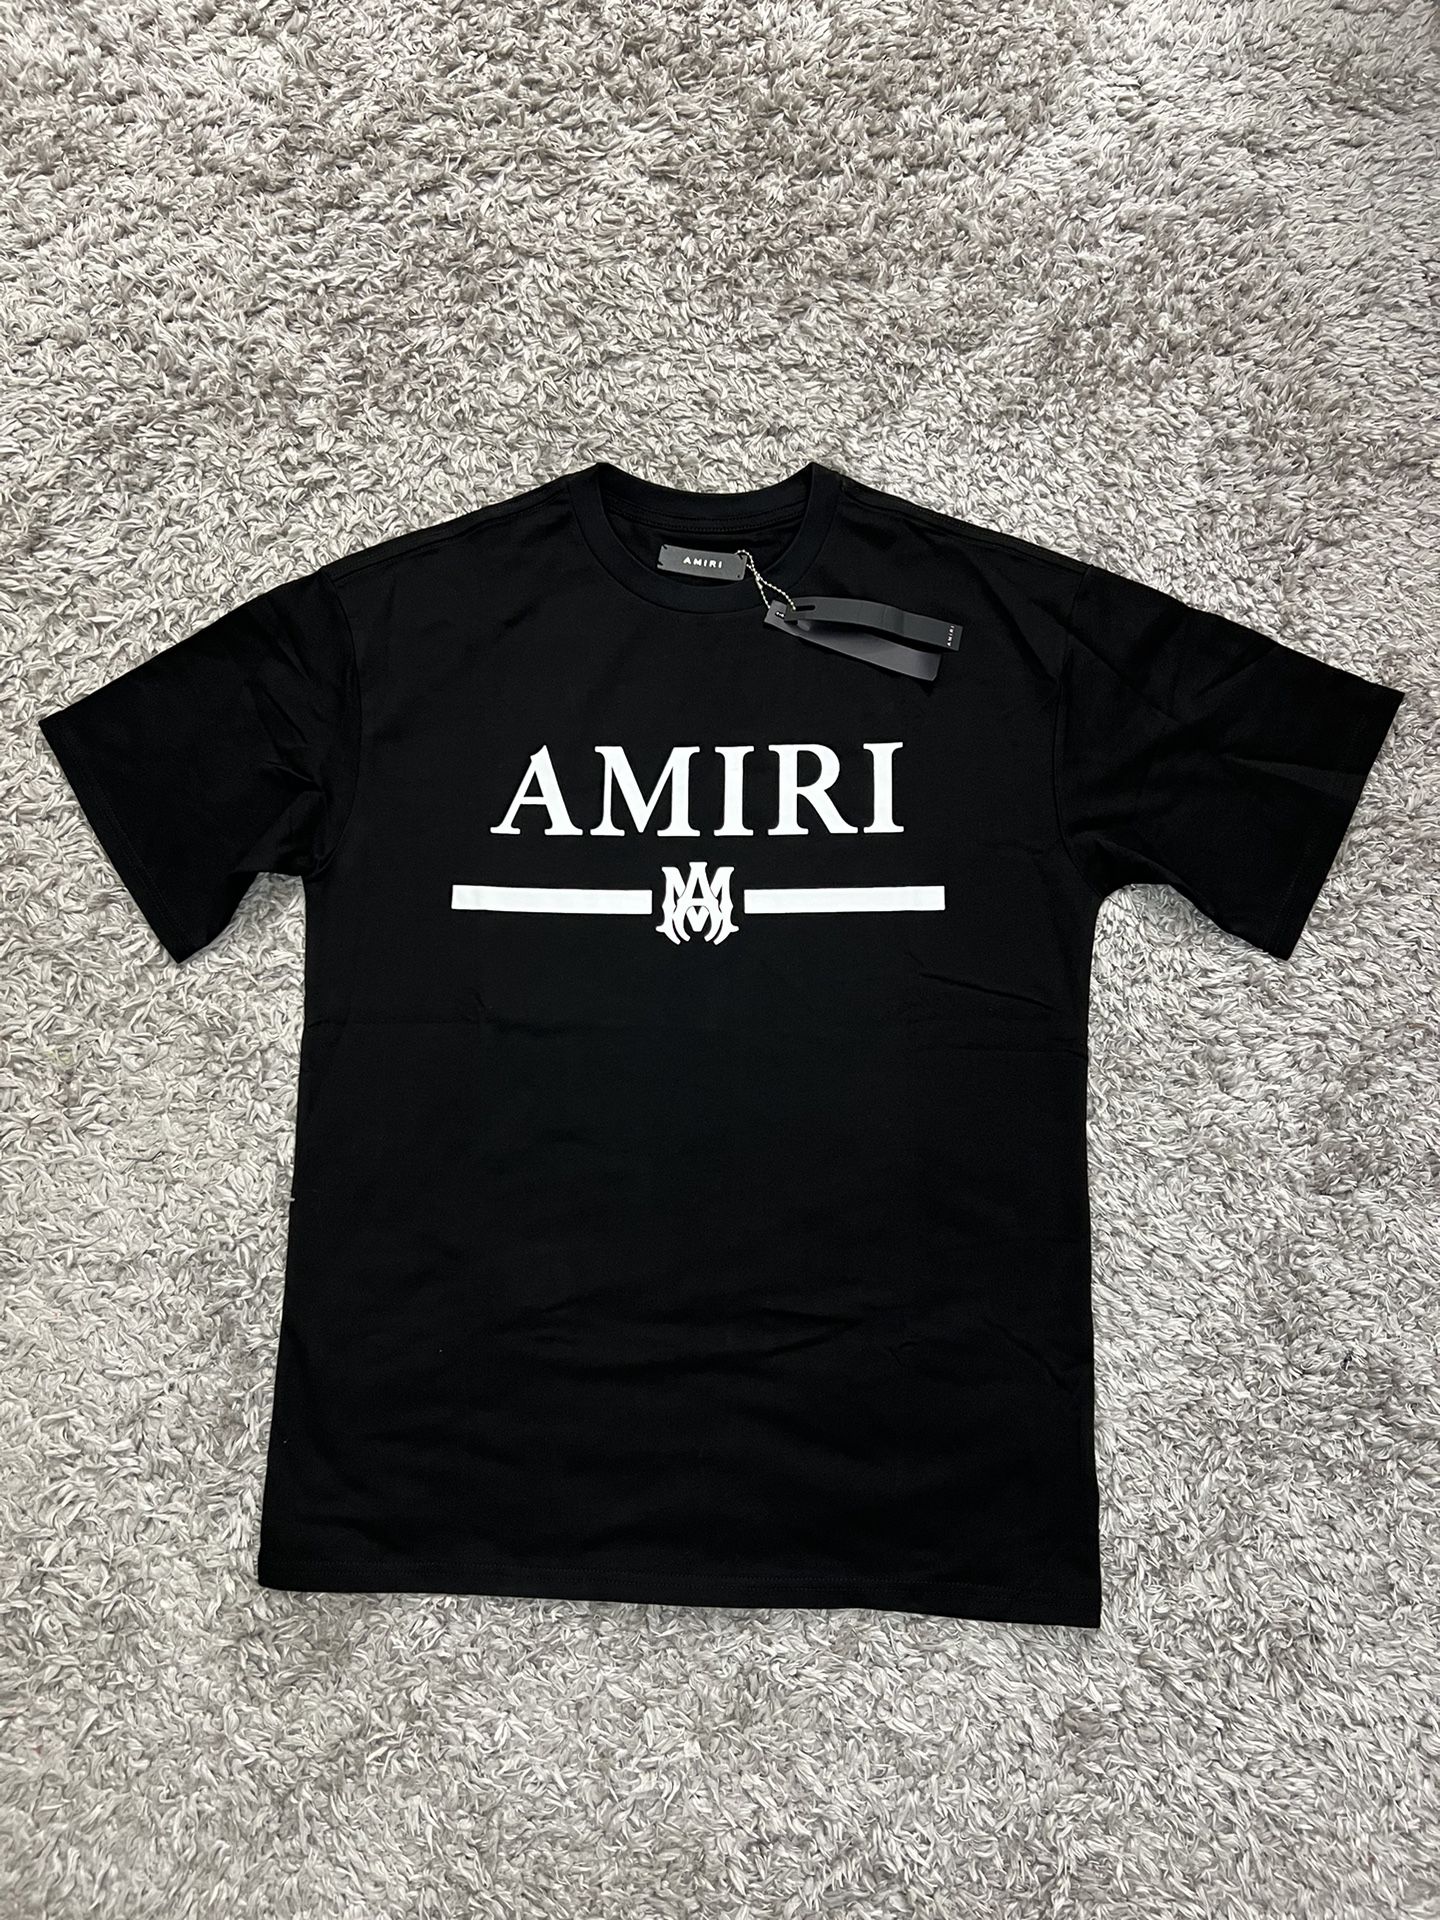 amiri shirt size medium 